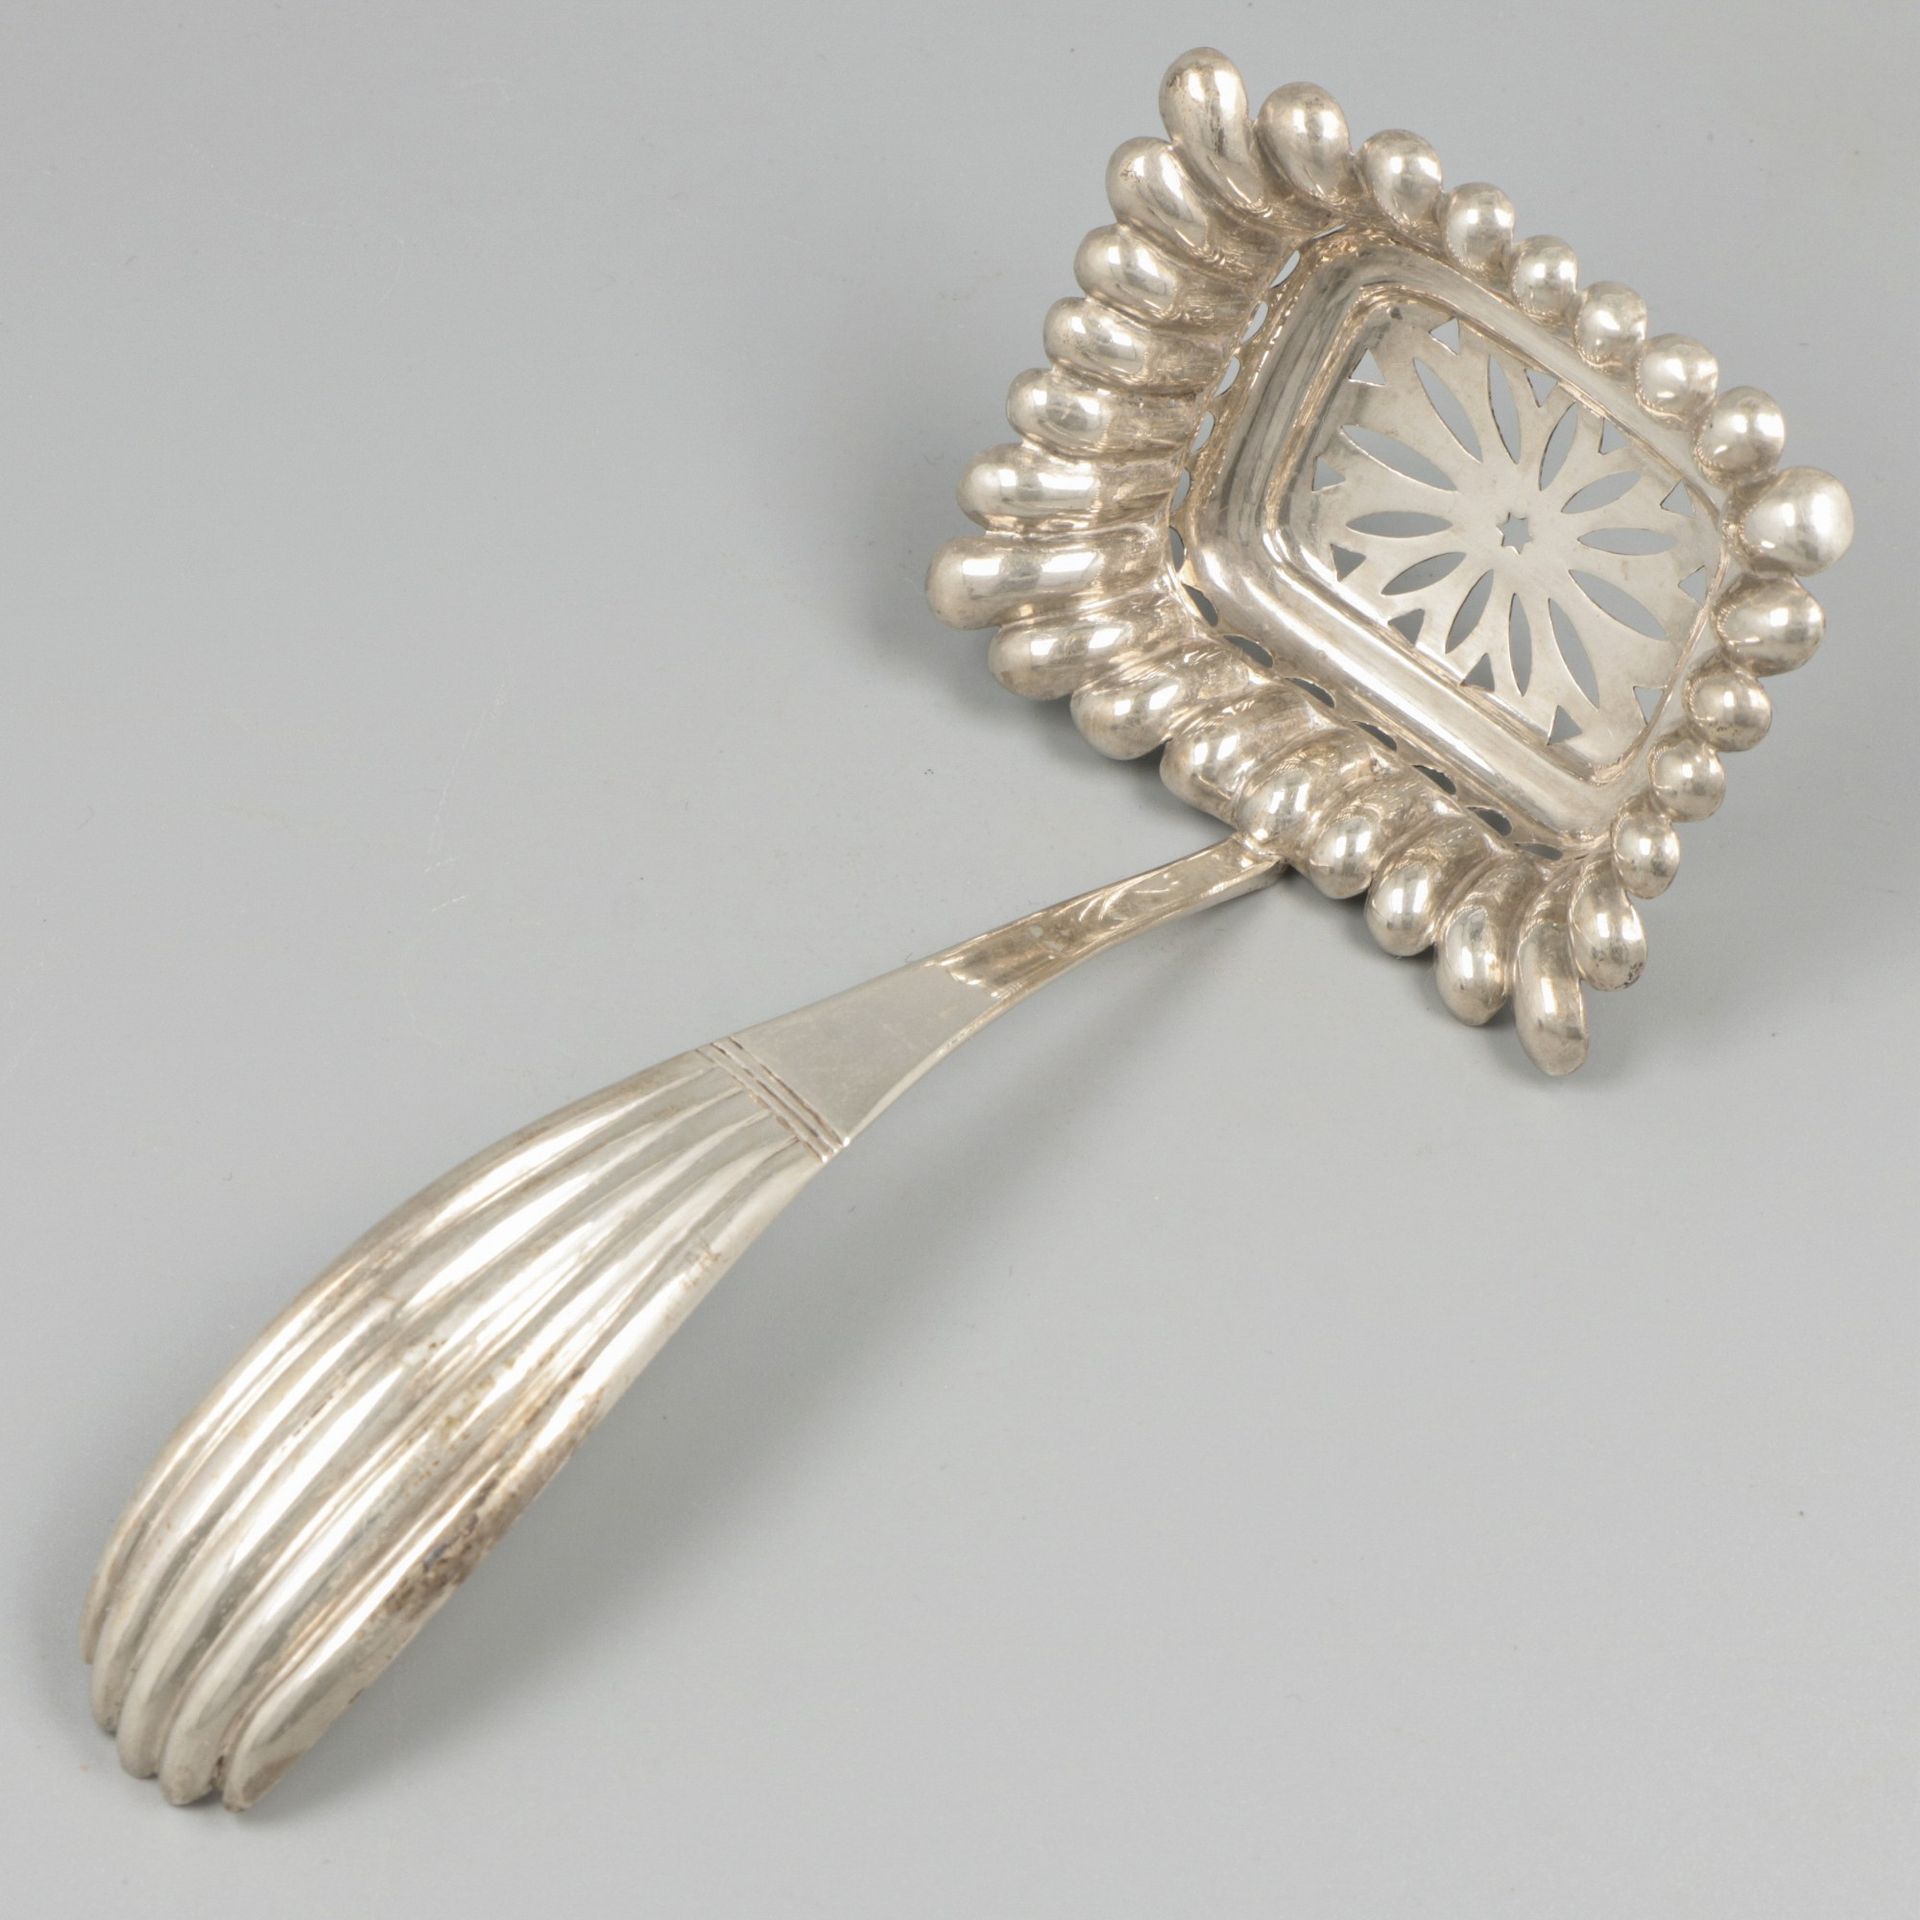 Silver sifter spoon. Mit konvexen und gelappten Formen und durchbrochener Schale&hellip;